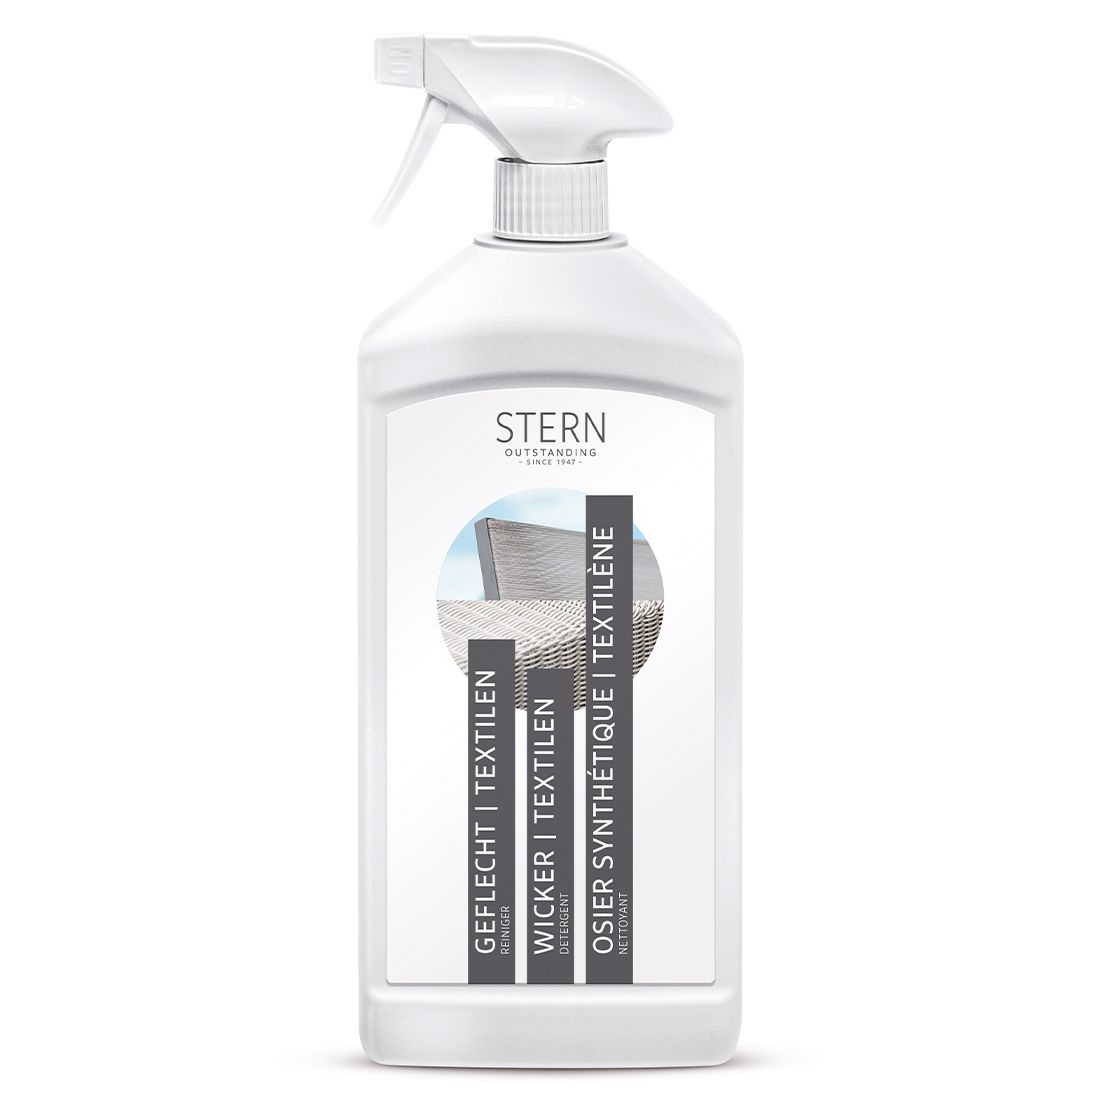 Stern Geflecht/Textilene Reinigerspray 1l